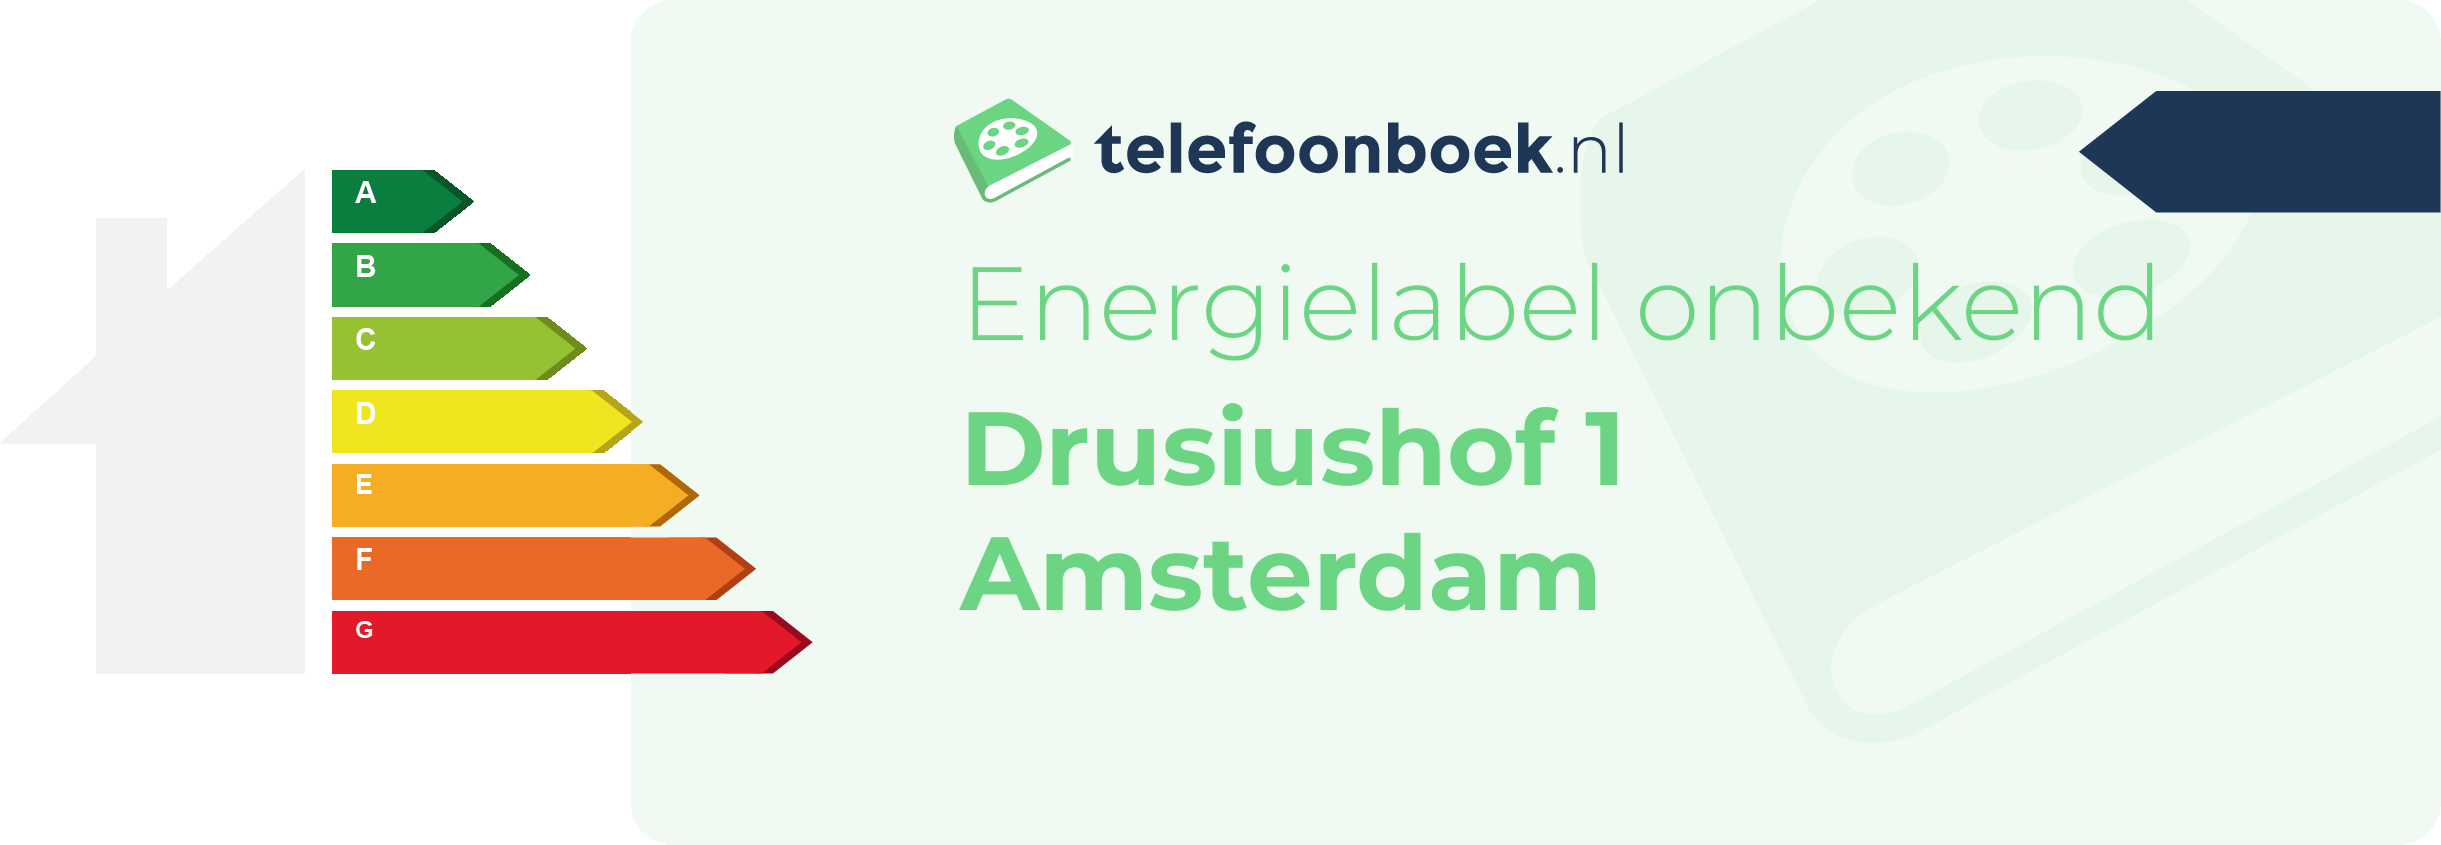 Energielabel Drusiushof 1 Amsterdam